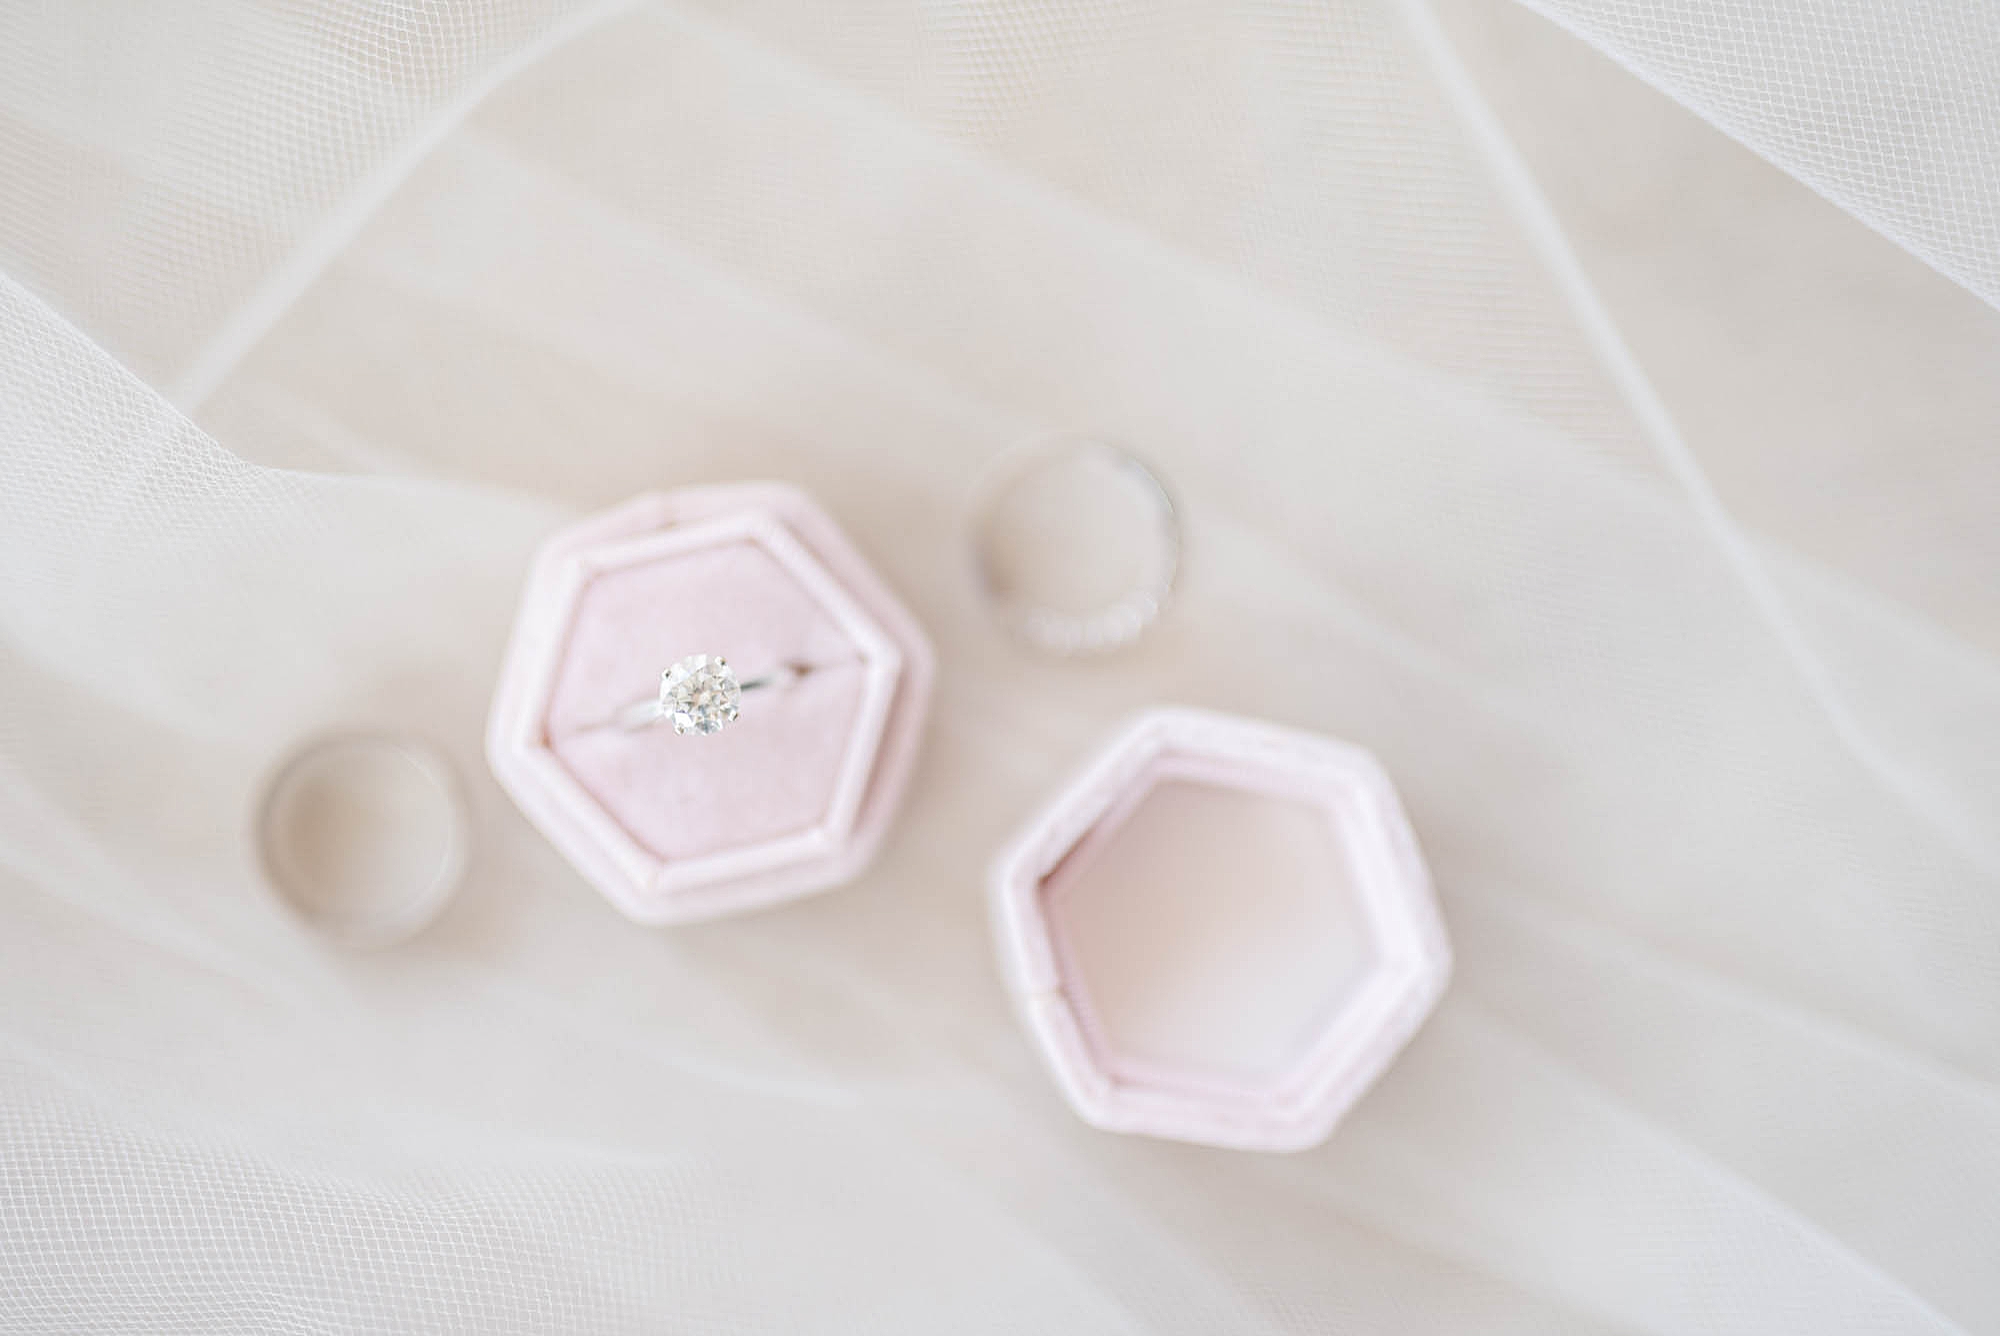 bride's rings in pink box on veil